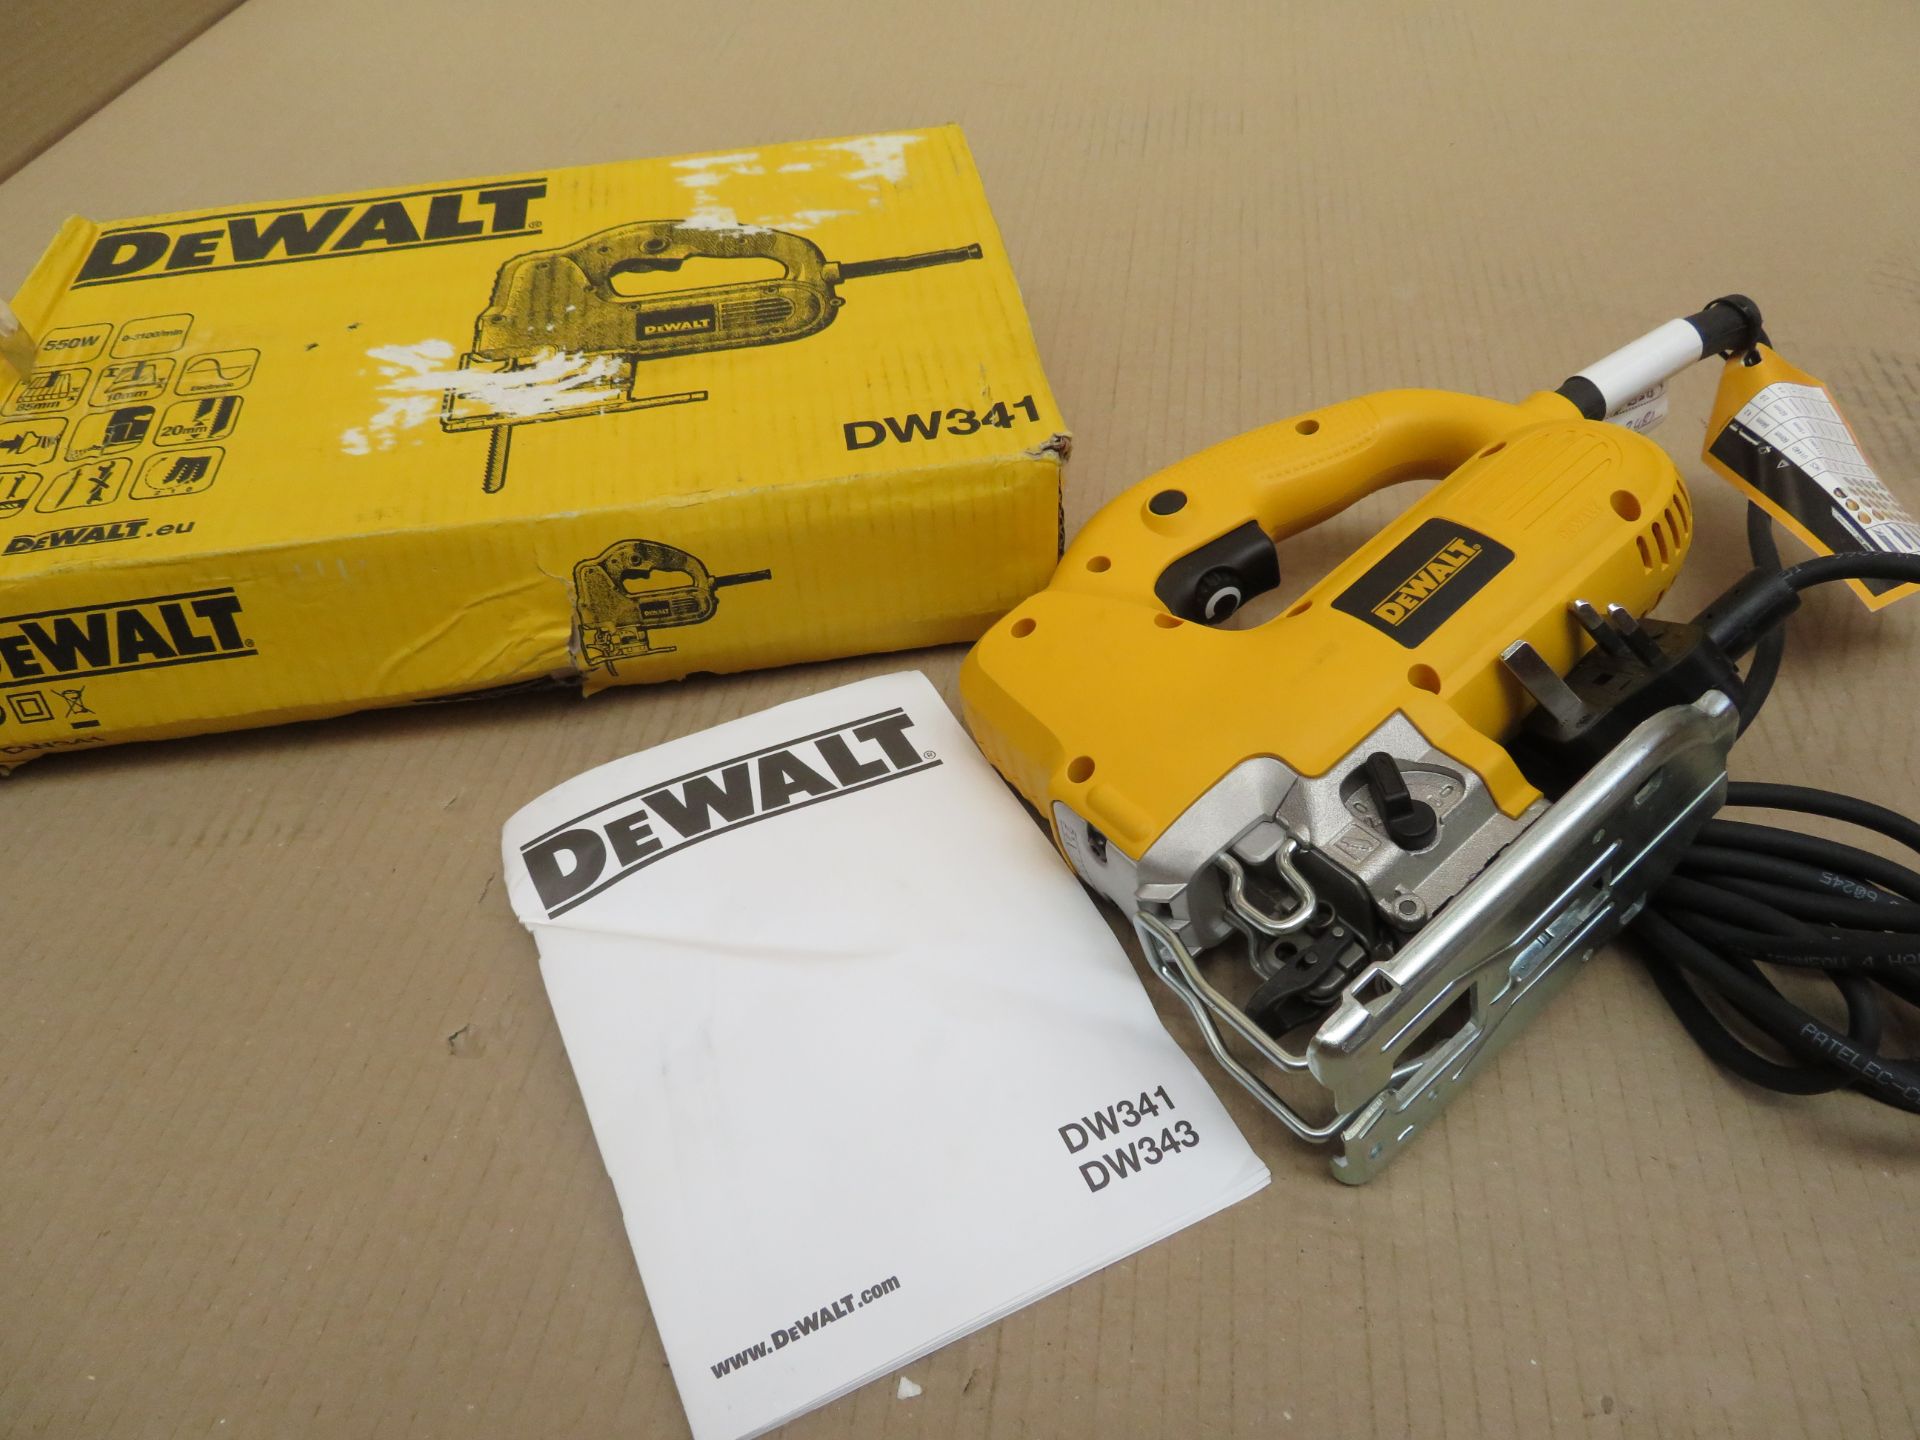 (A21) Dewalt Dw341-Gb 550W Jigsaw 230V- New Condition, Slightly Tatty Box. - Image 3 of 4